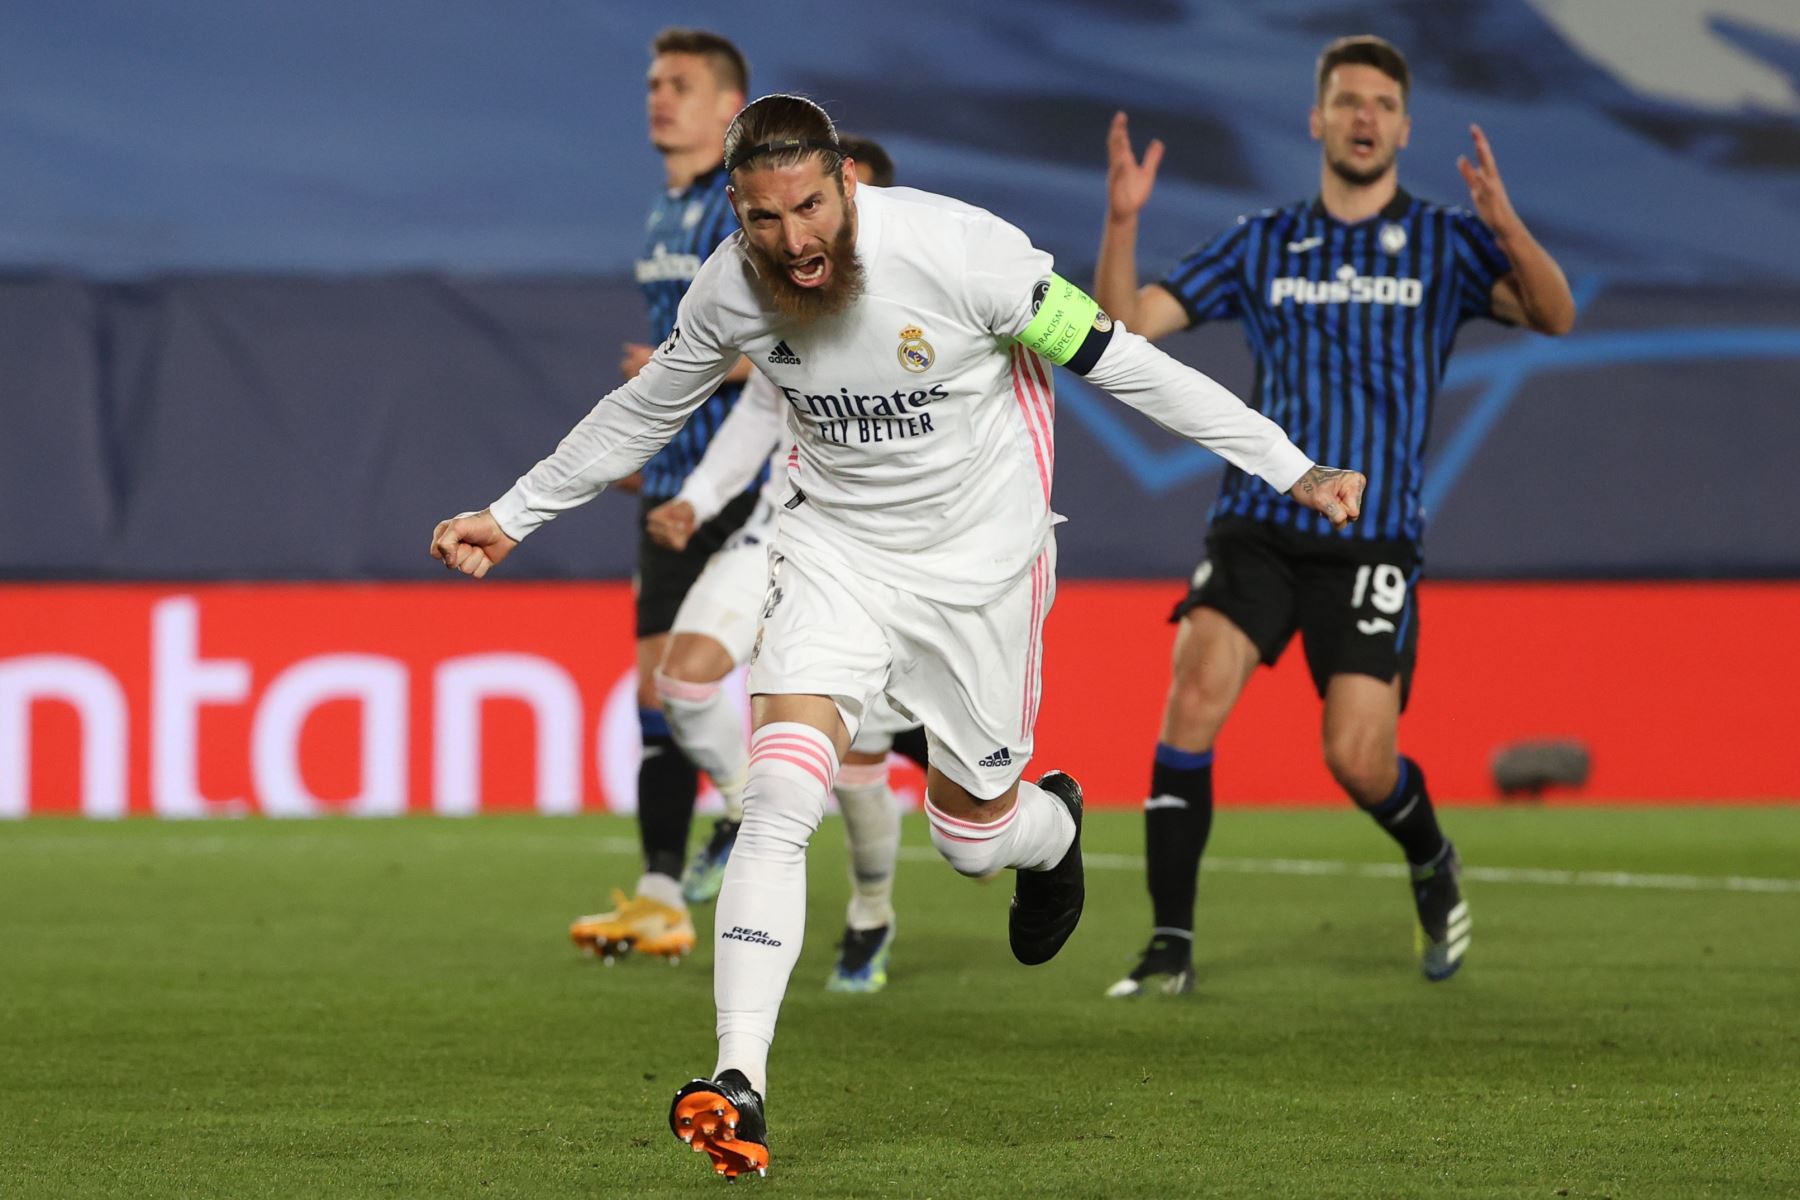 El defensa del Real Madrid Sergio Ramos celebra su gol, de penalti, segundo del equipo ante el Atalanta, durante el partido de vuelta de octavos de final de la Liga de Campeones.
Foto: EFE